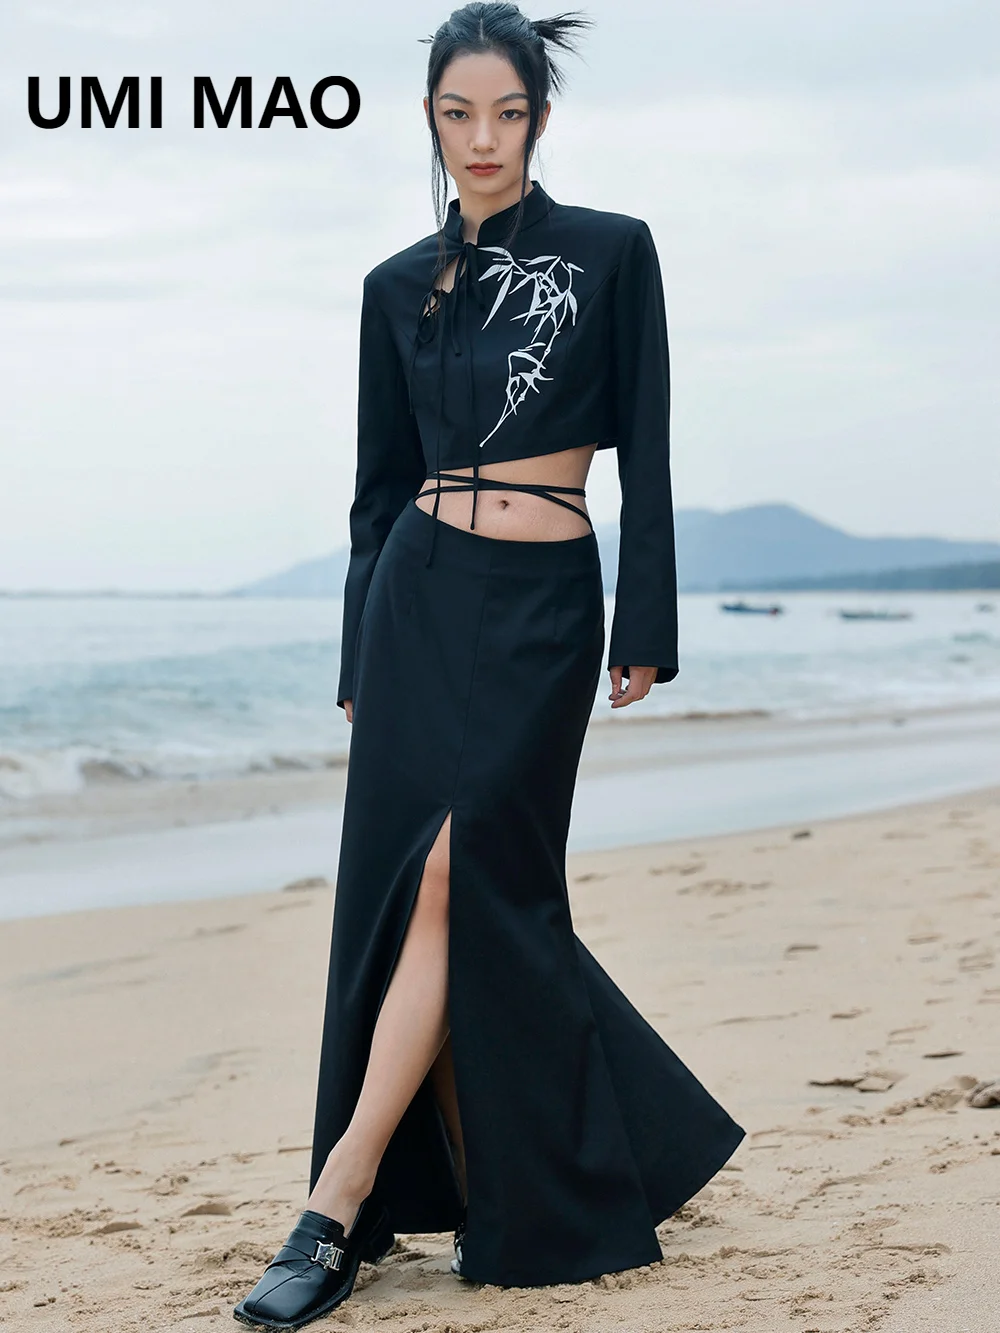 

Блейзеры в нишевом дизайне UMI MAO, юбка-полубоди на весну, женская тонкая юбка-годе с заниженной талией